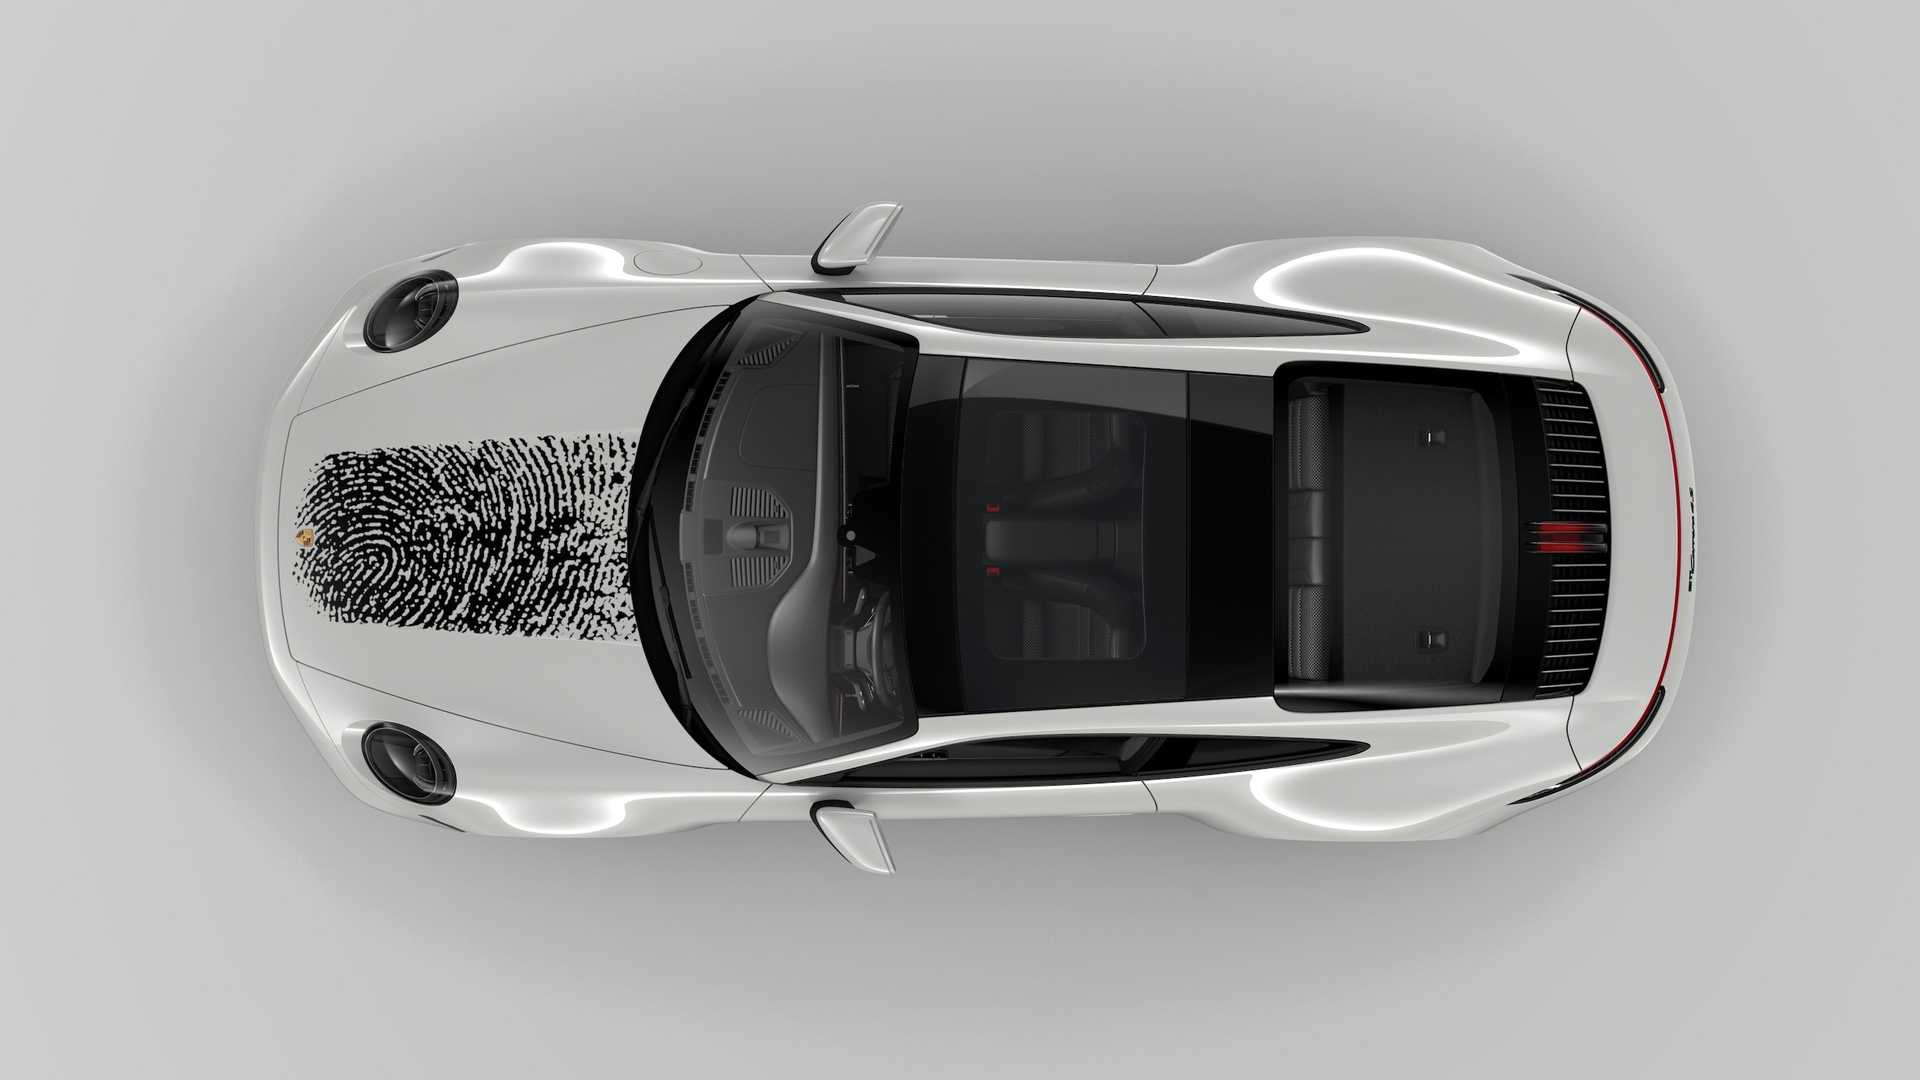 Porsche cho khách hàng in dấu vân tay lên mui xe với giá gần 200 triệu đồng